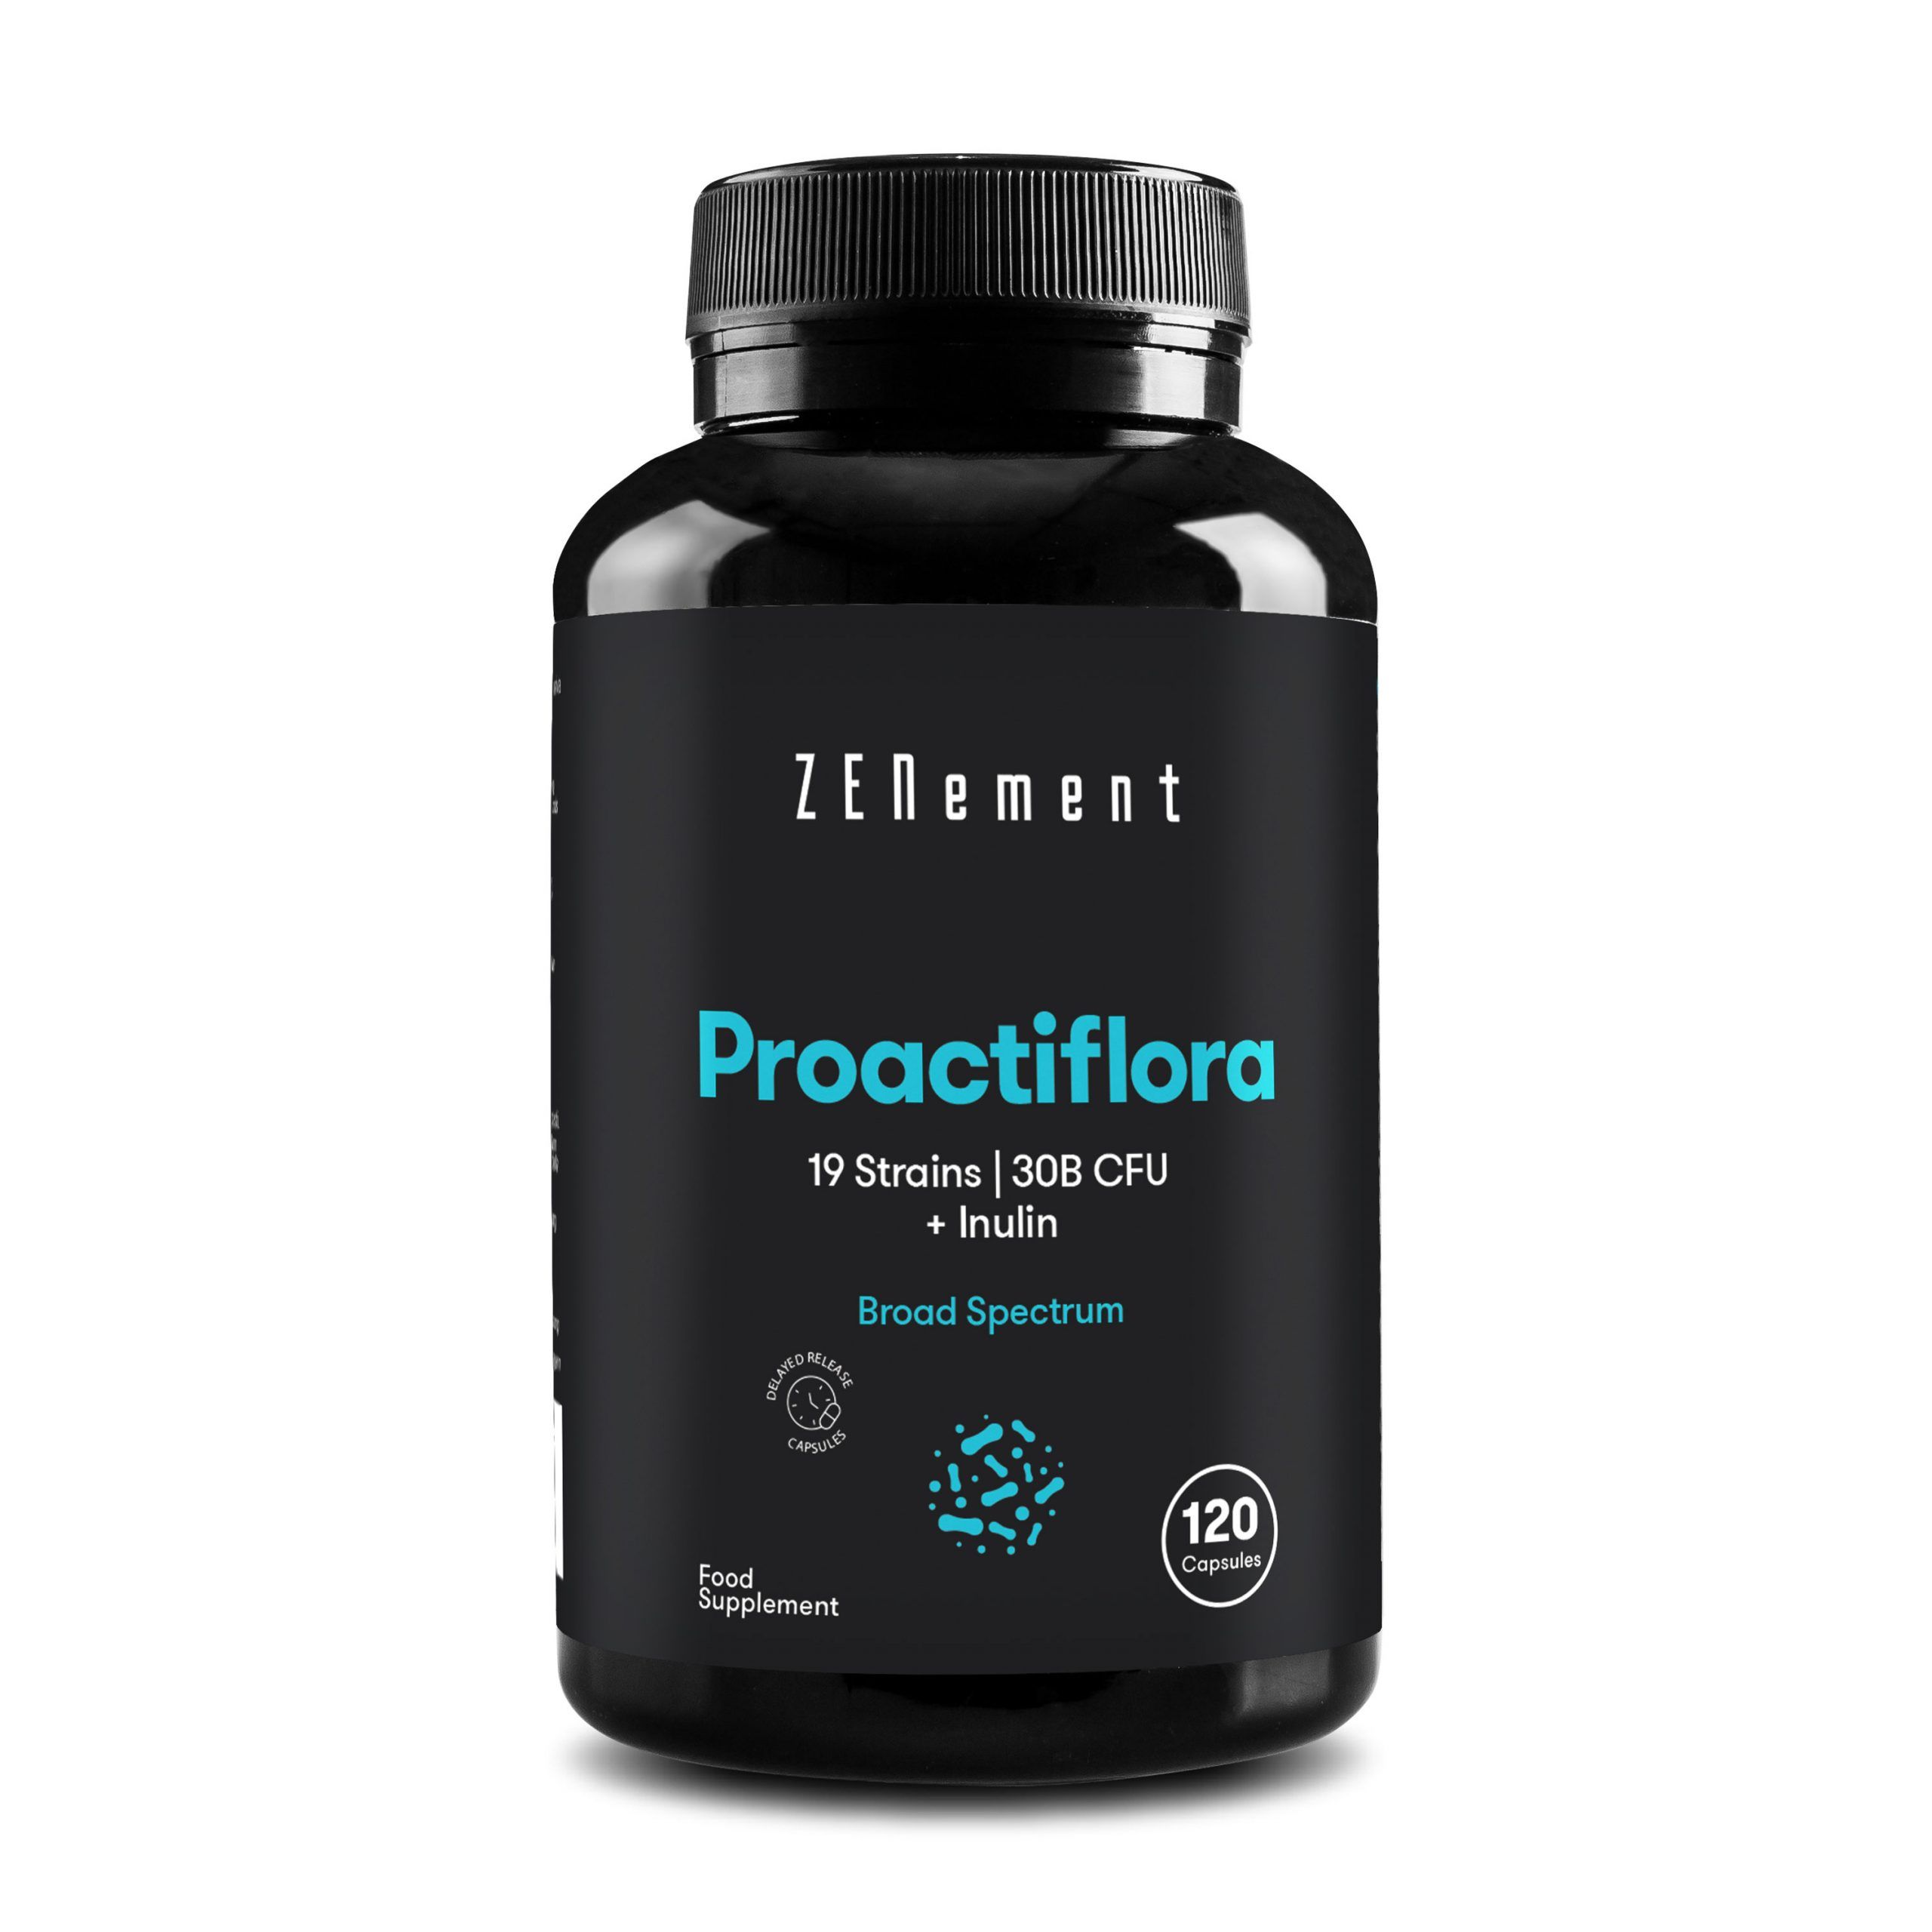 Proactiflora Probiotiques - 120 Gélules | 19 Souches microbiotiques (30 milliards d’UFC) + Inuline | Végan | de Zenement